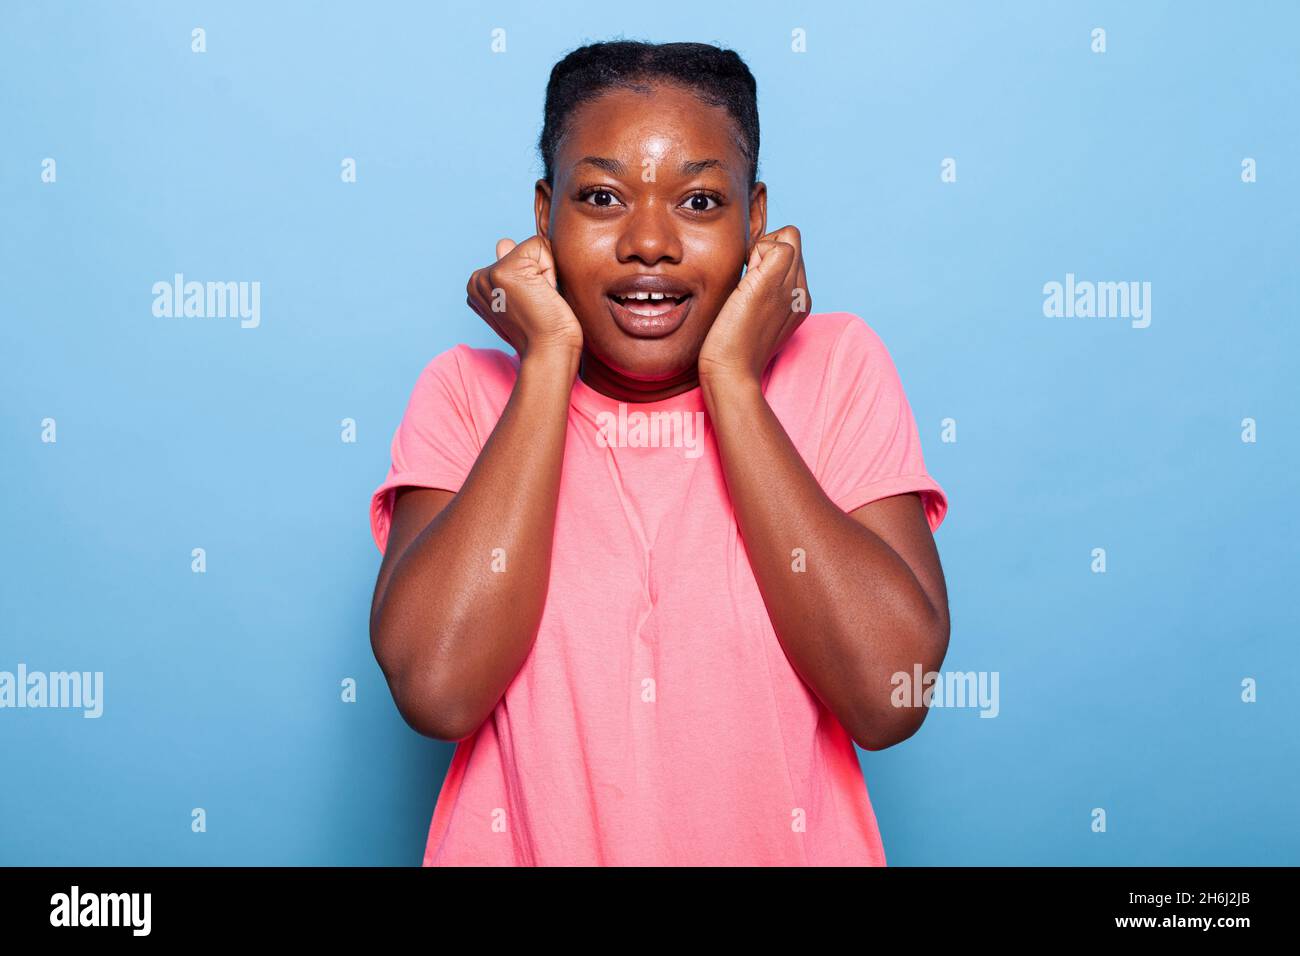 Portrait d'une jeune femme afro-américaine excitée souriant à l'appareil photo tout en se tenant en studio sur fond bleu.Adolescent ayant l'énergie de faire des expressions du visage joyeux.Concept de confiance Banque D'Images